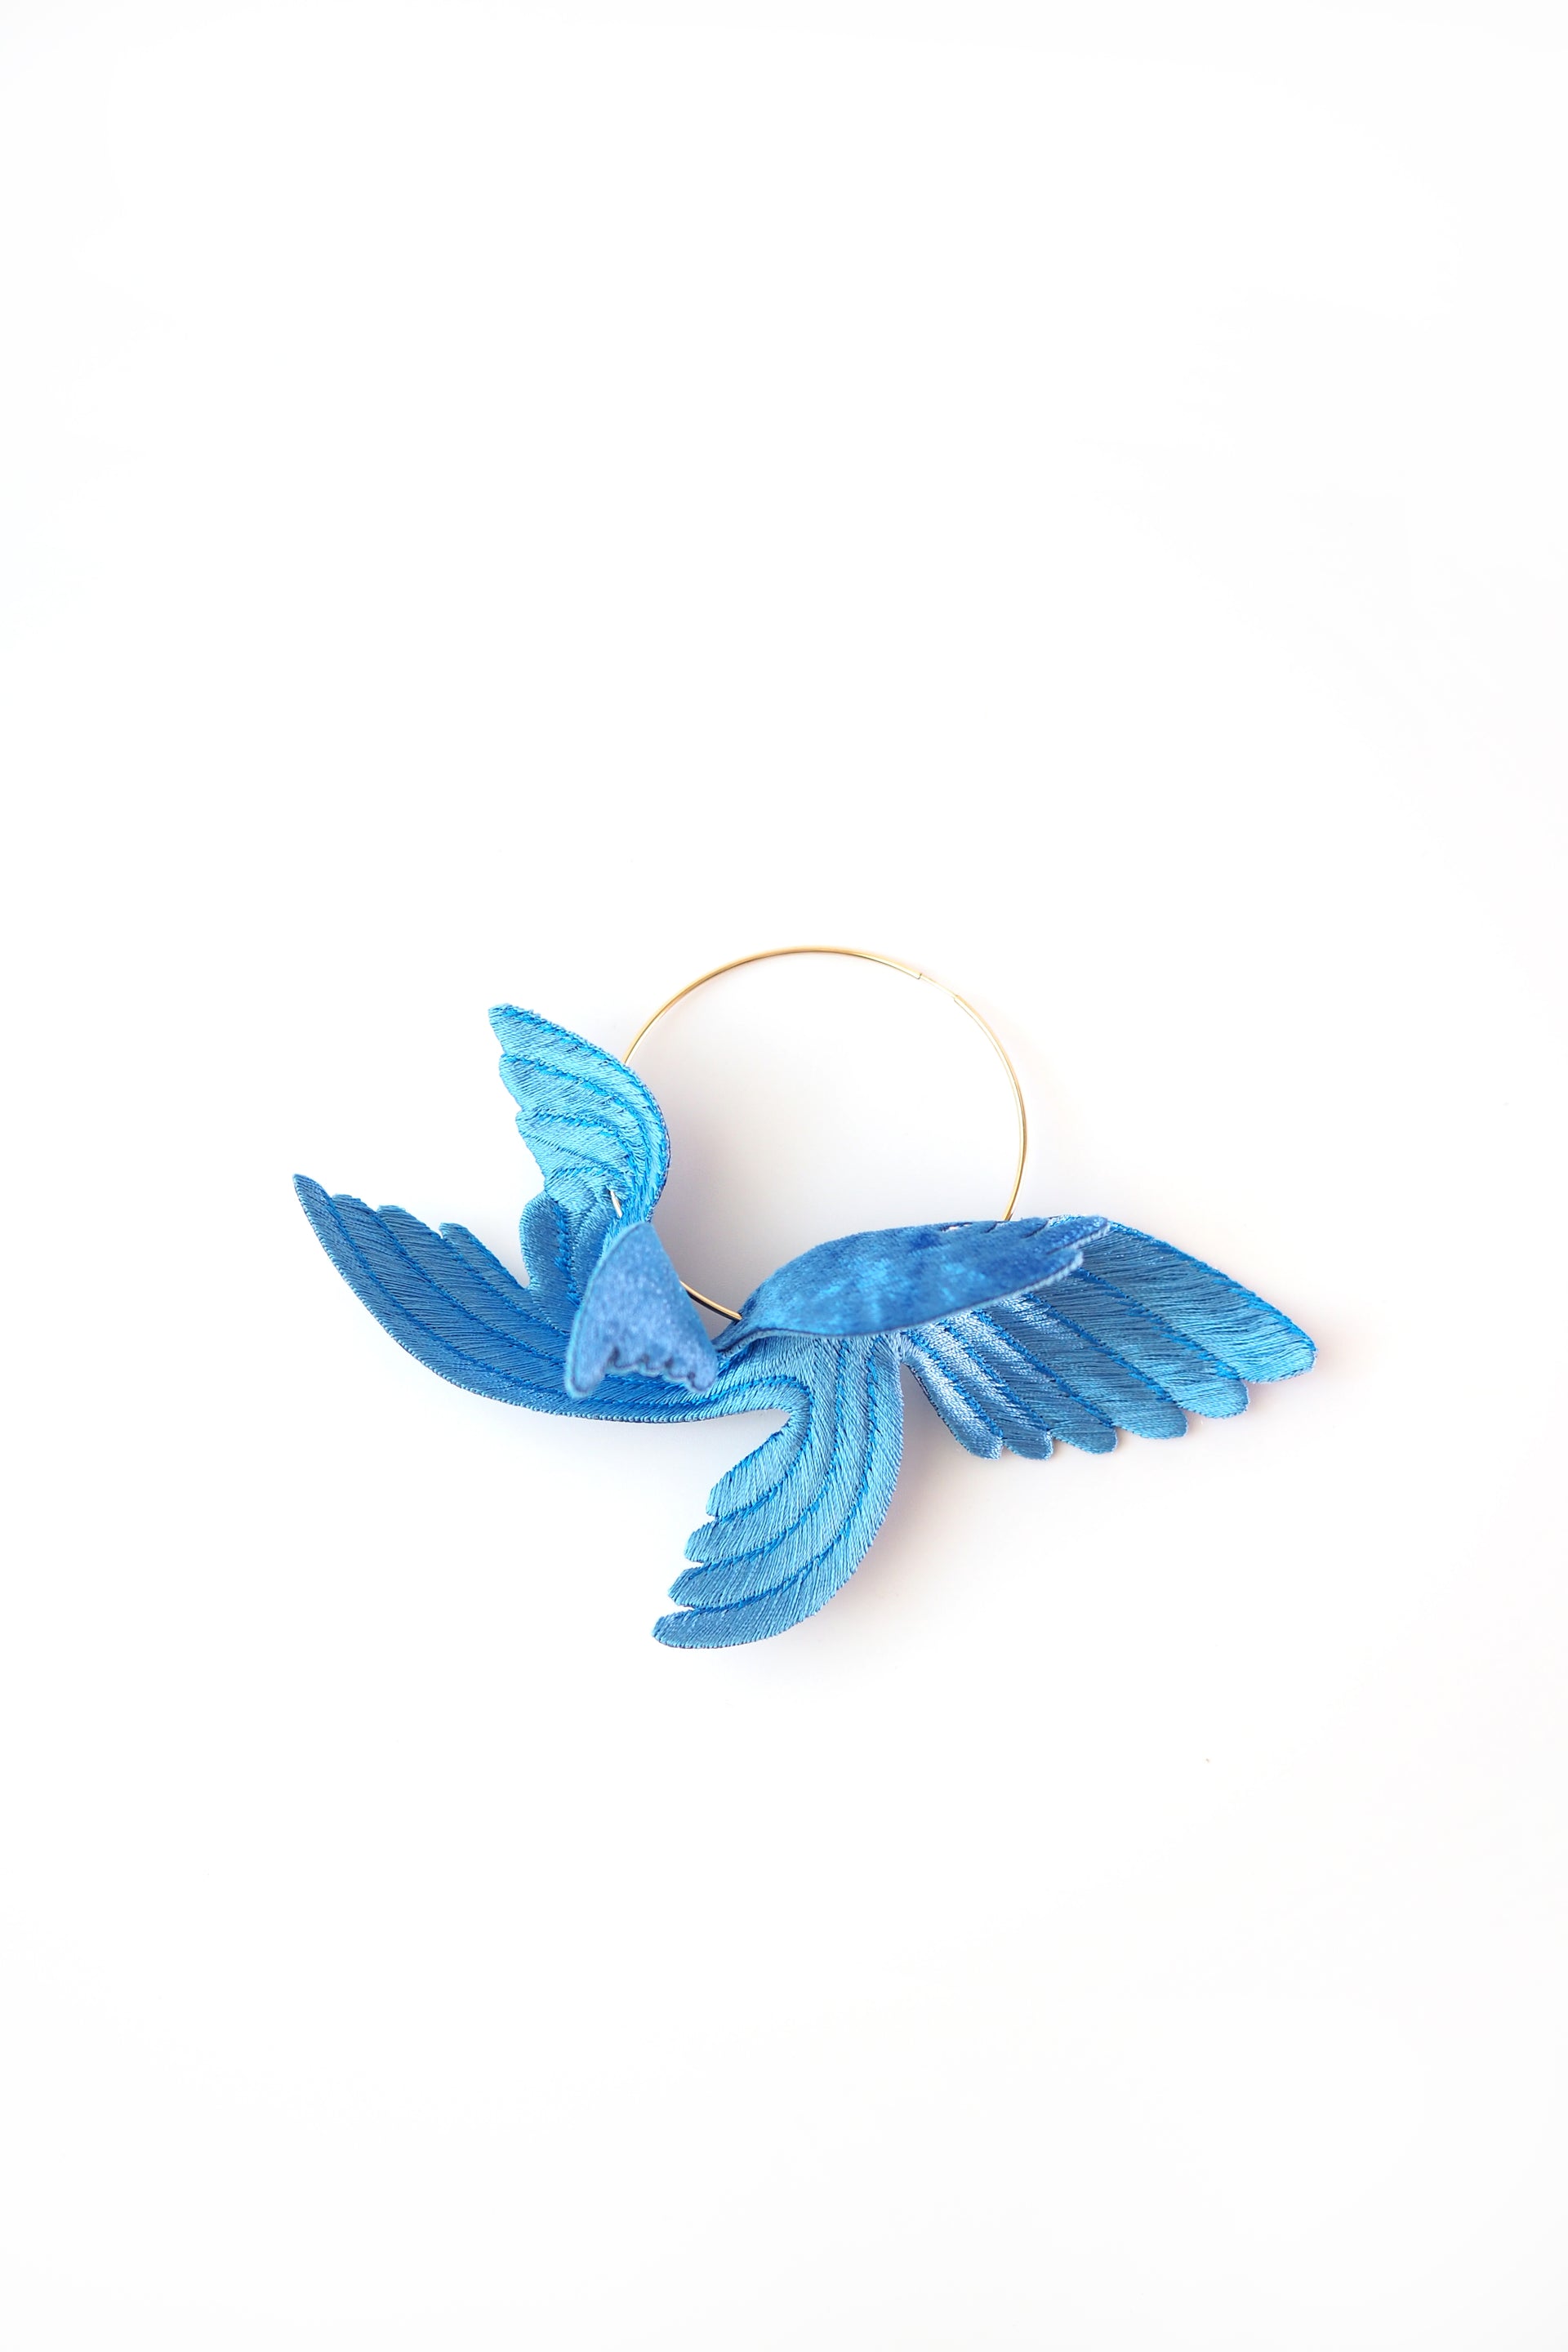 ARRO / JOY"LITTLE BIRD" / EARRING / BLUE